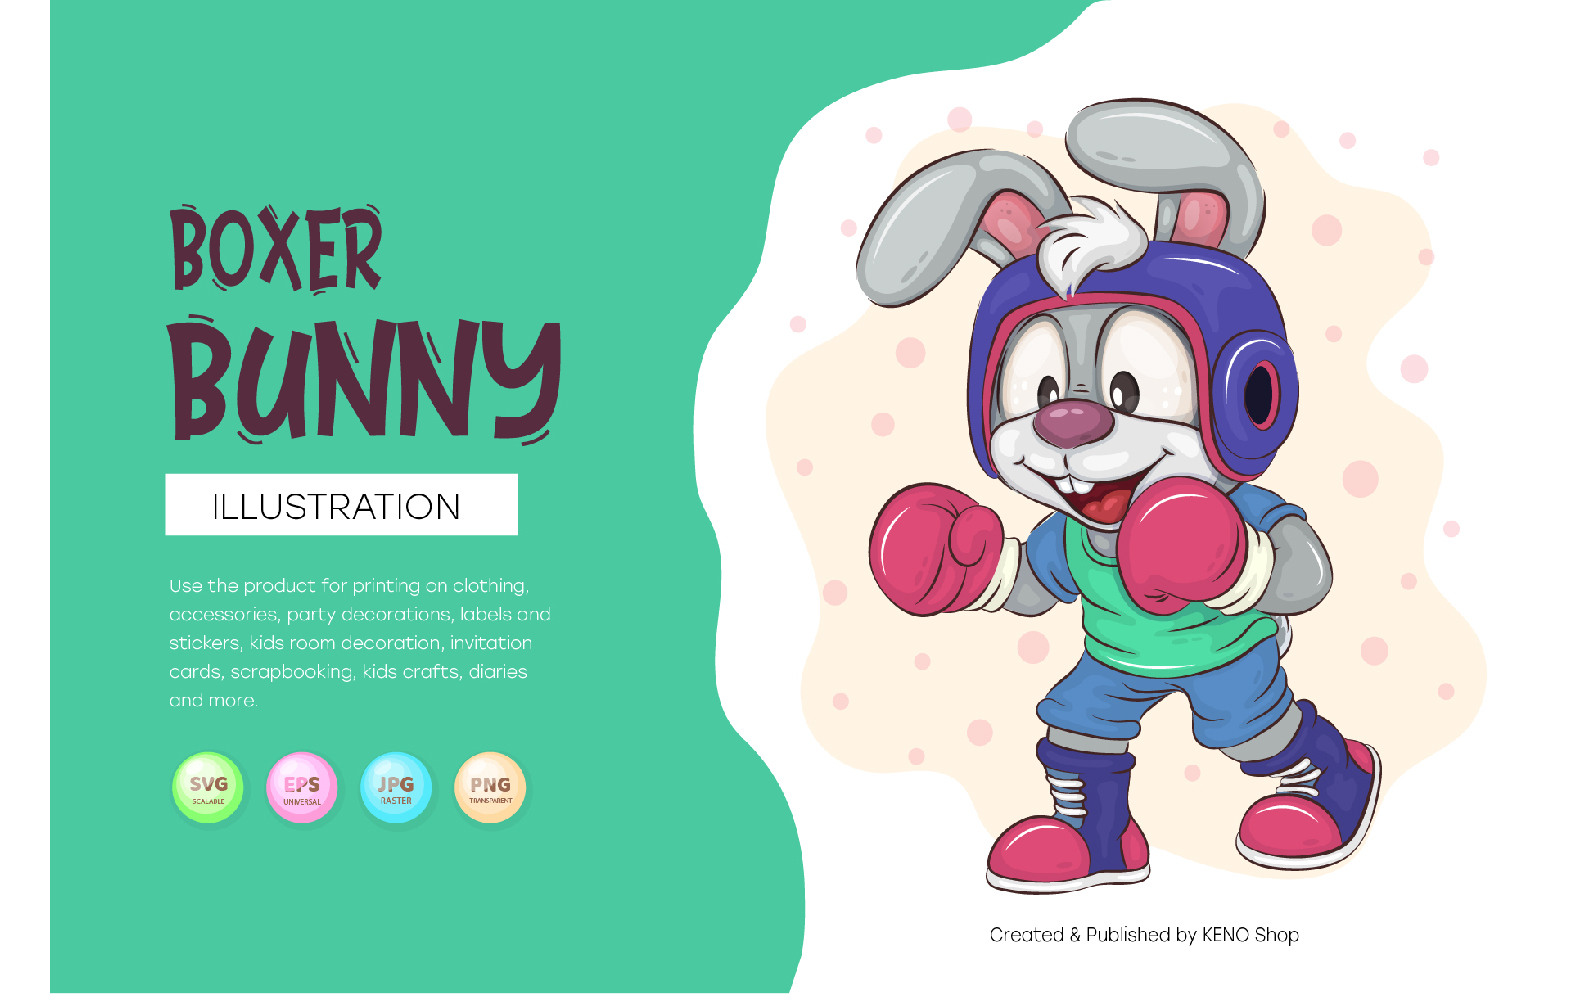 Cartoon Bunny Boxer. T-Shirt, PNG, SVG.